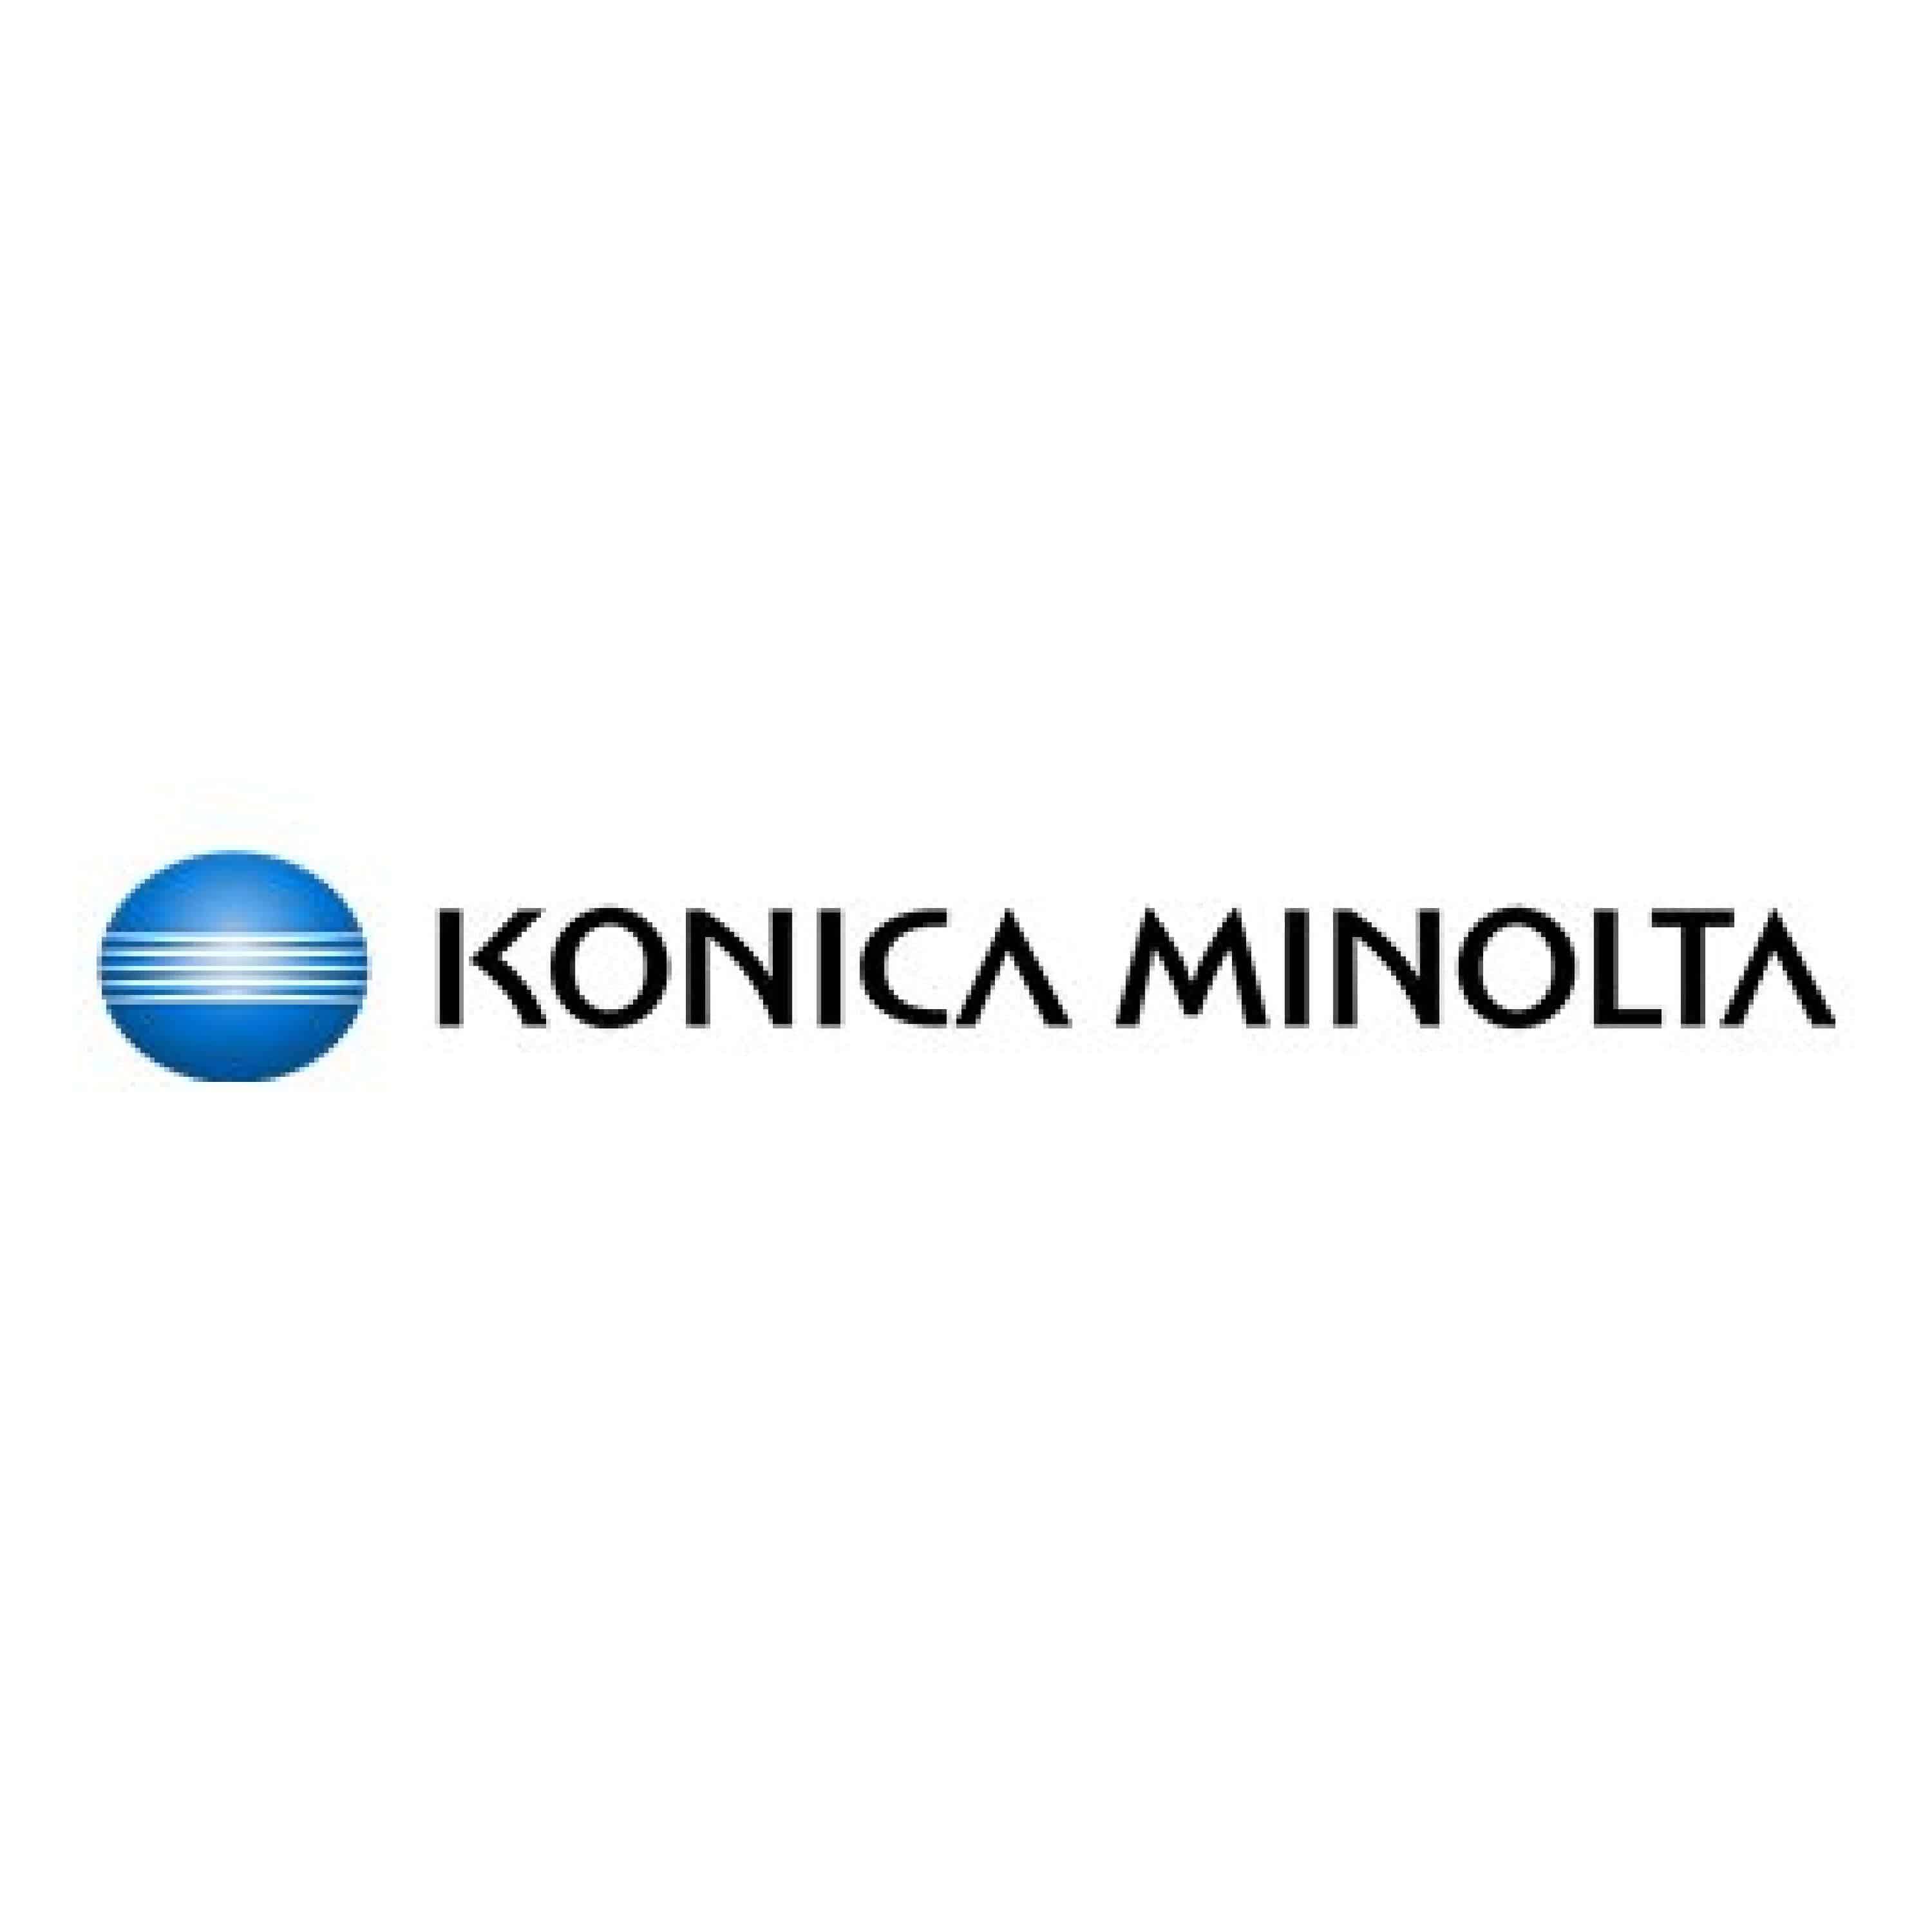 Original Toner Konica Minolta A3VX354 / TN-620M Magenta